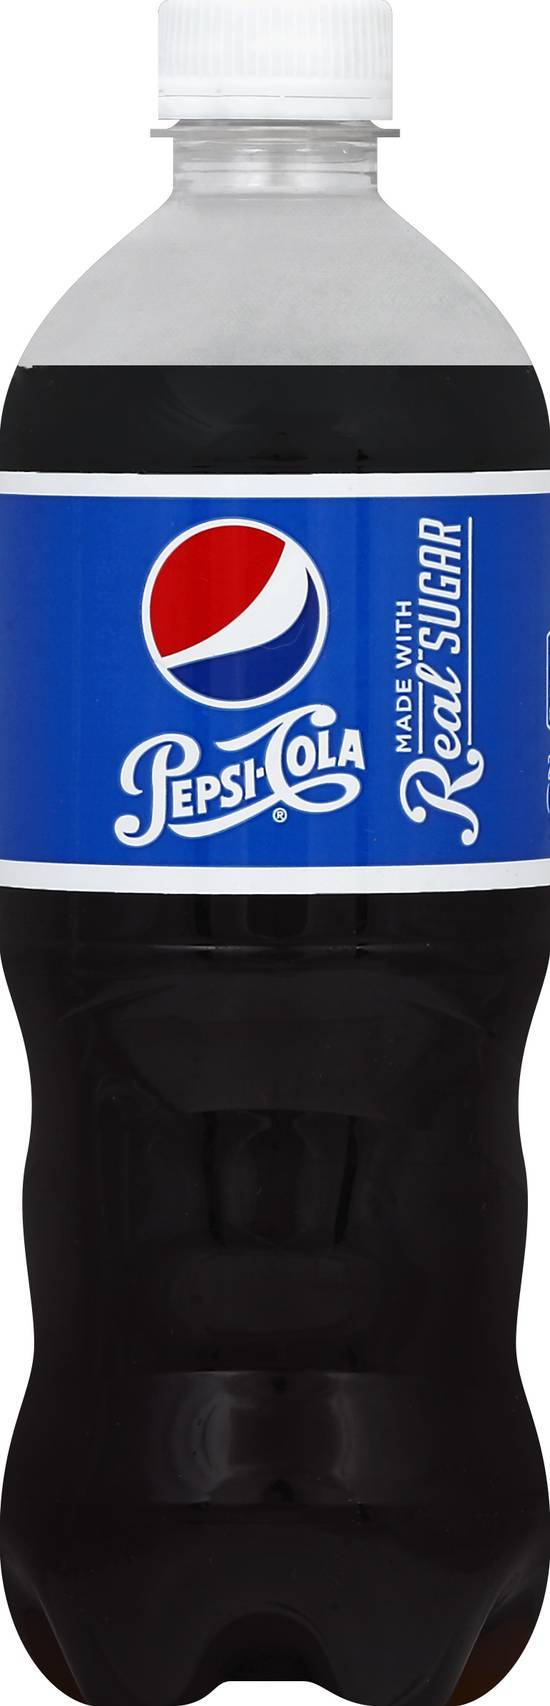 Pepsi Cola Soda (20 fl oz)